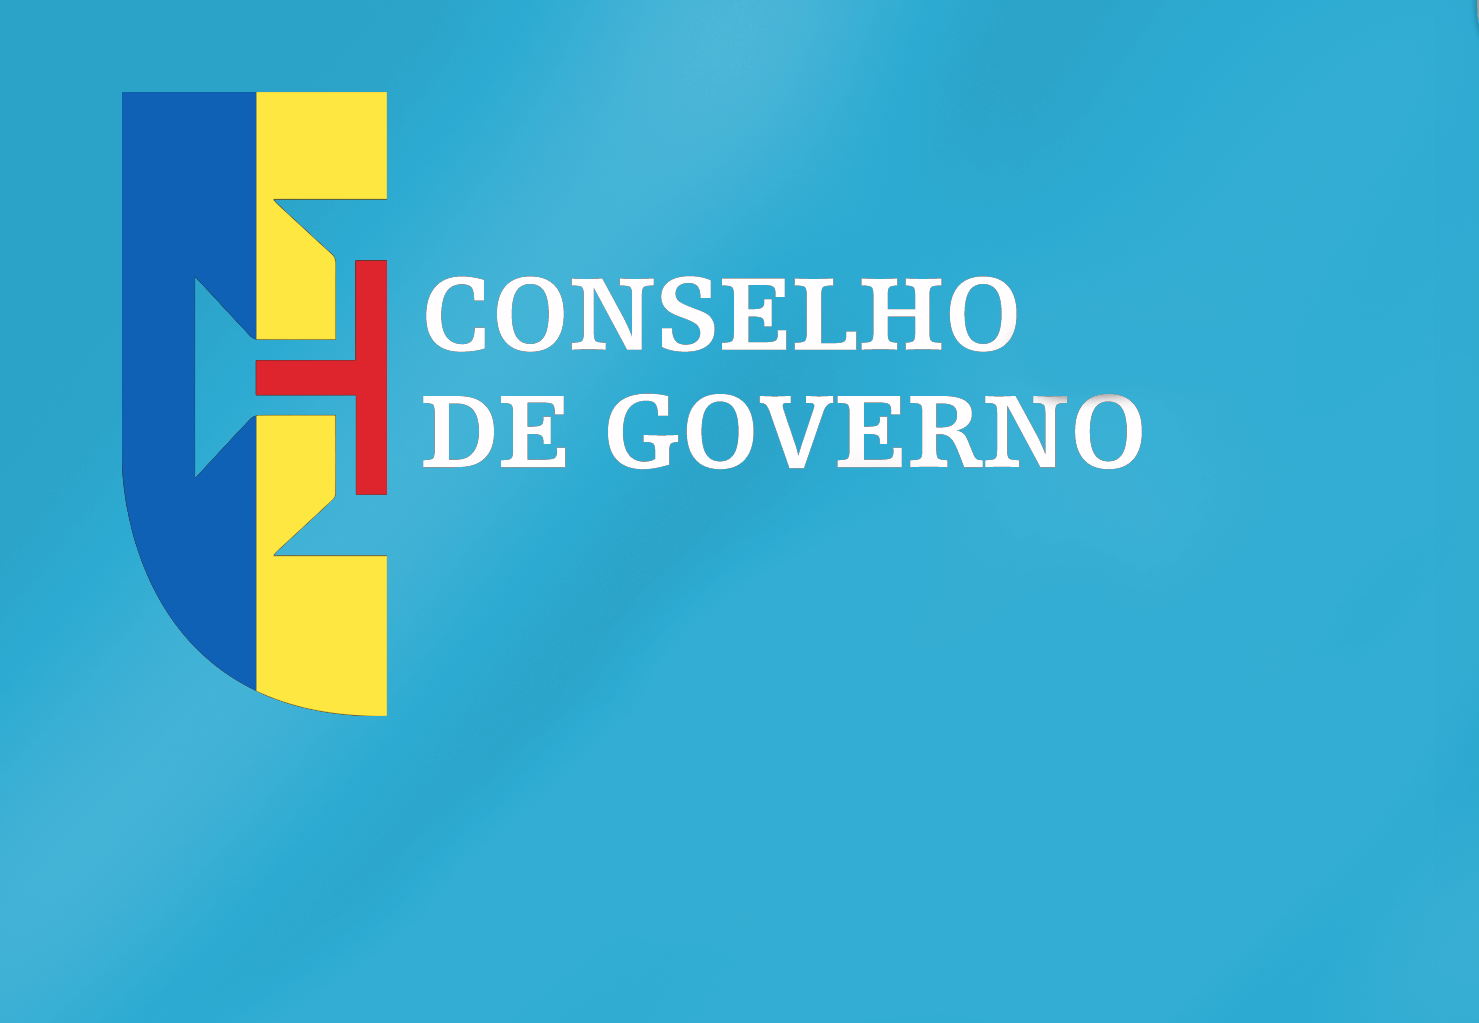 Conclusões Conselho de Governo - 02 de junho de 2022